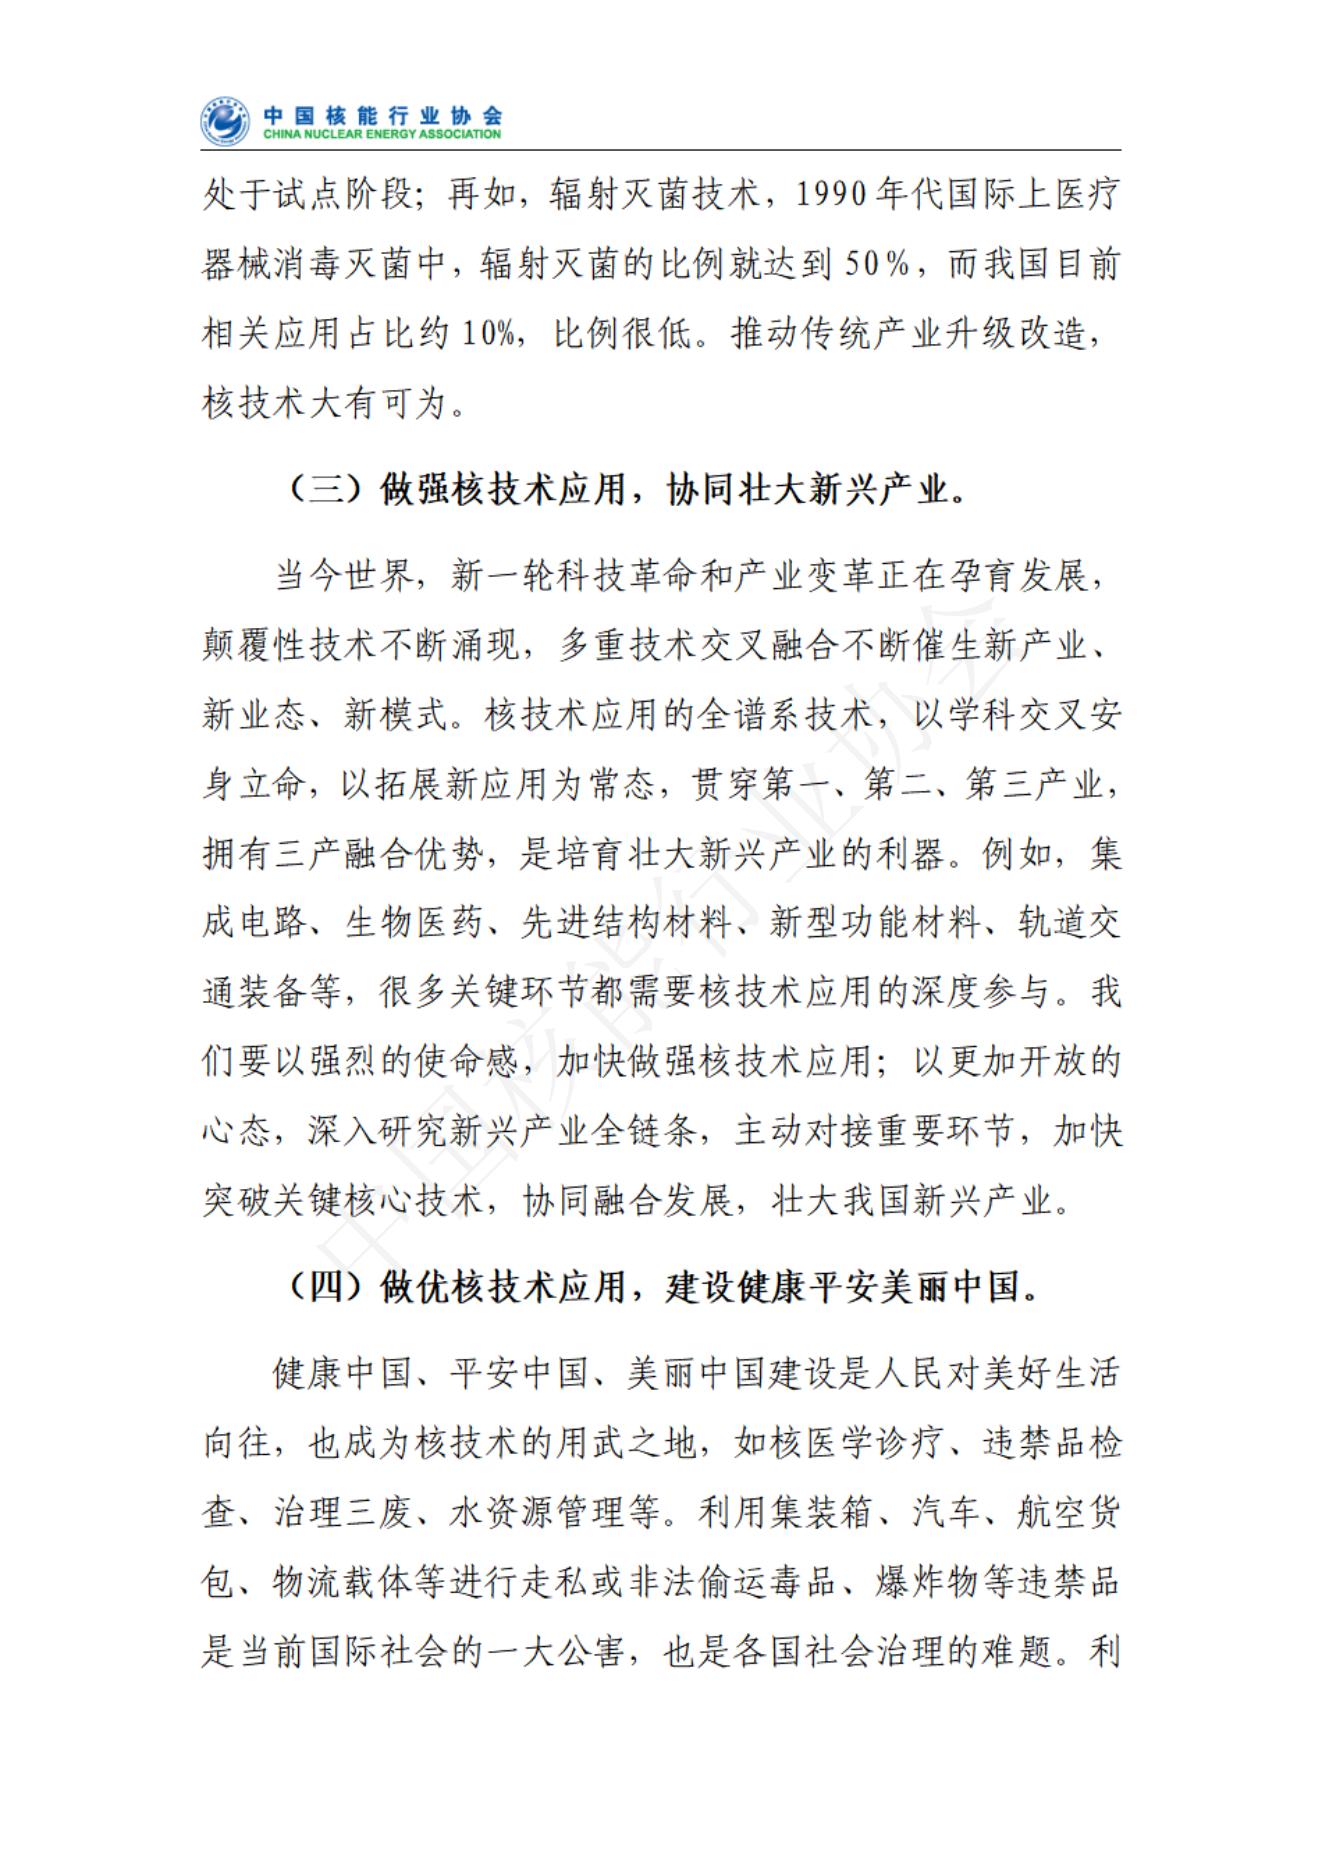 中国核技术应用产业发展报告核心报告（发布稿）(1)_06.jpg